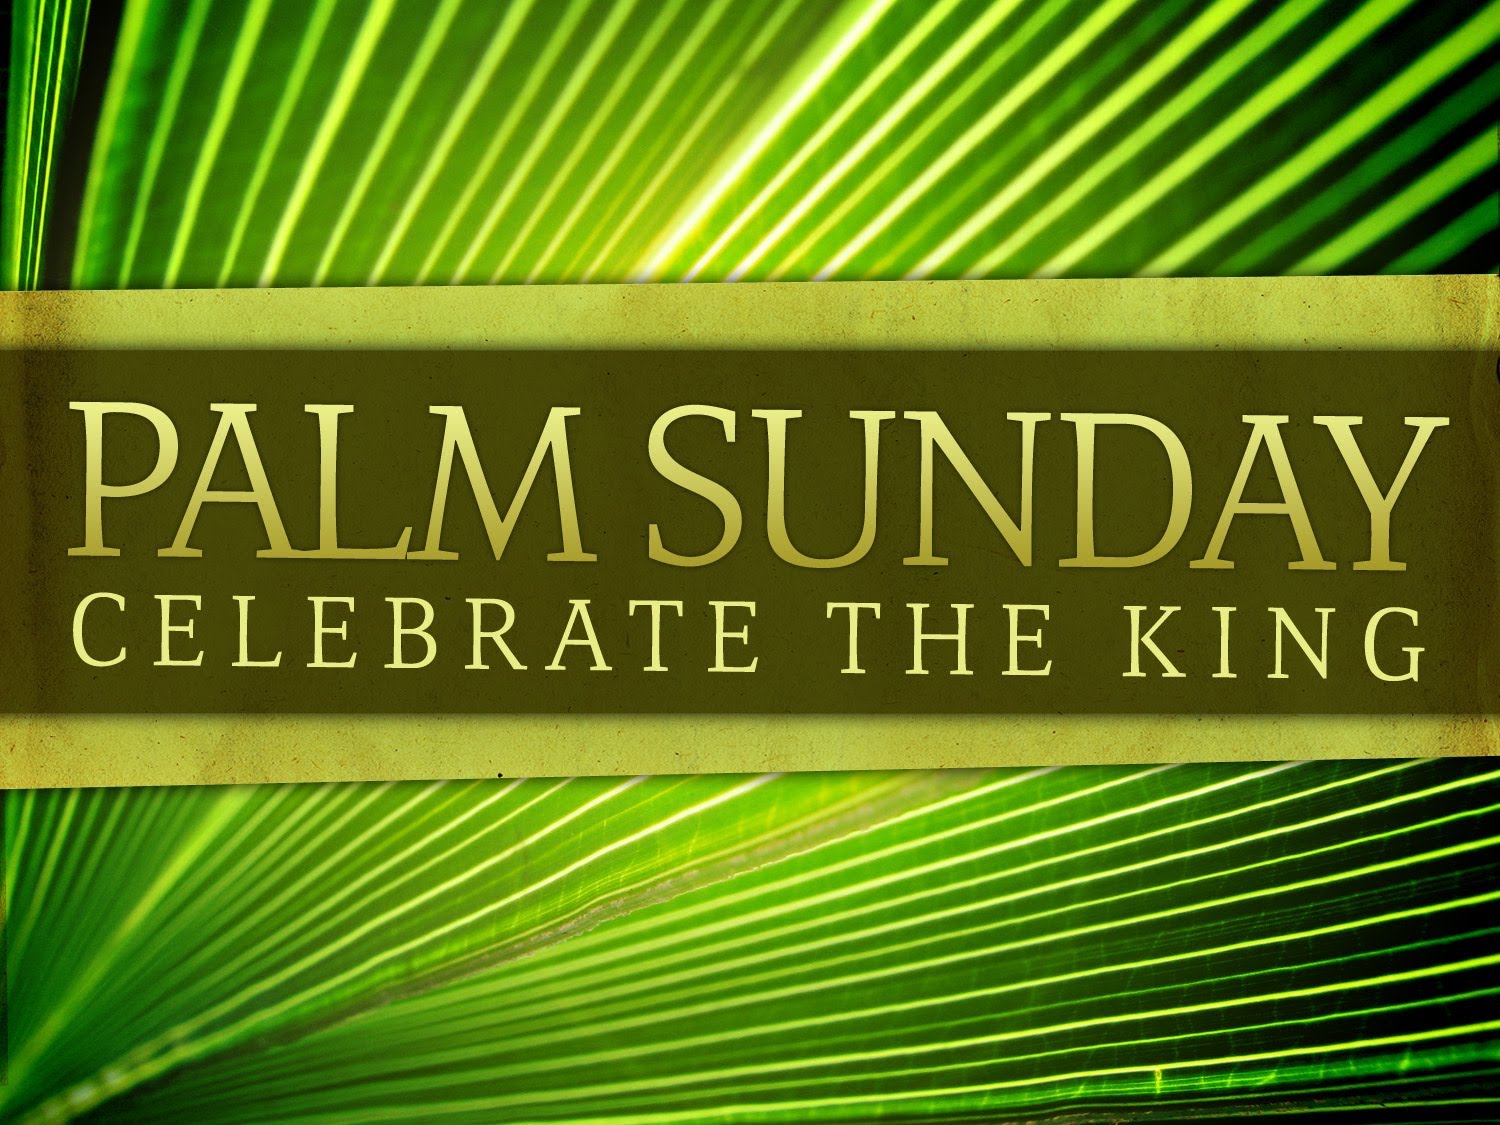 Palm Sunday Bible Verse - Palm Sunday Background Hd - HD Wallpaper 